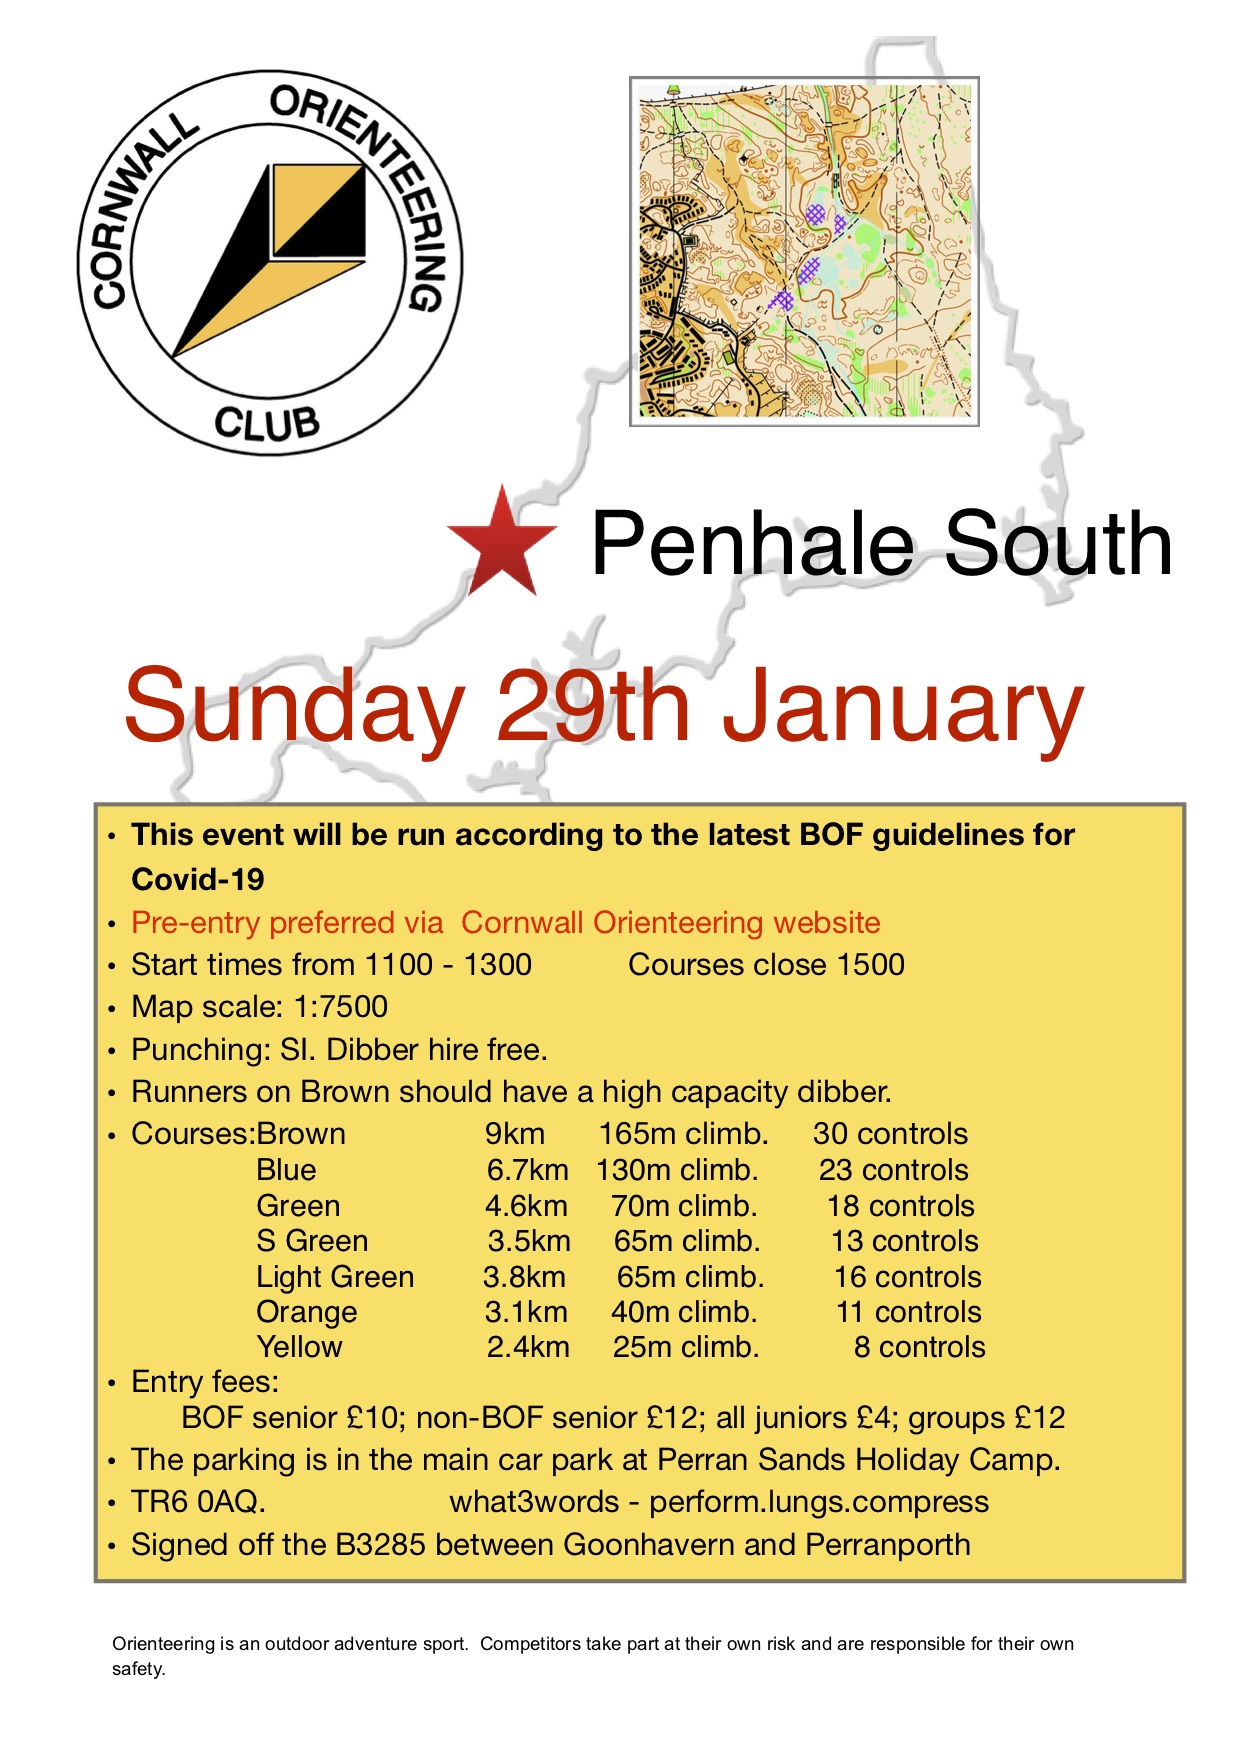 Penhale event flyer